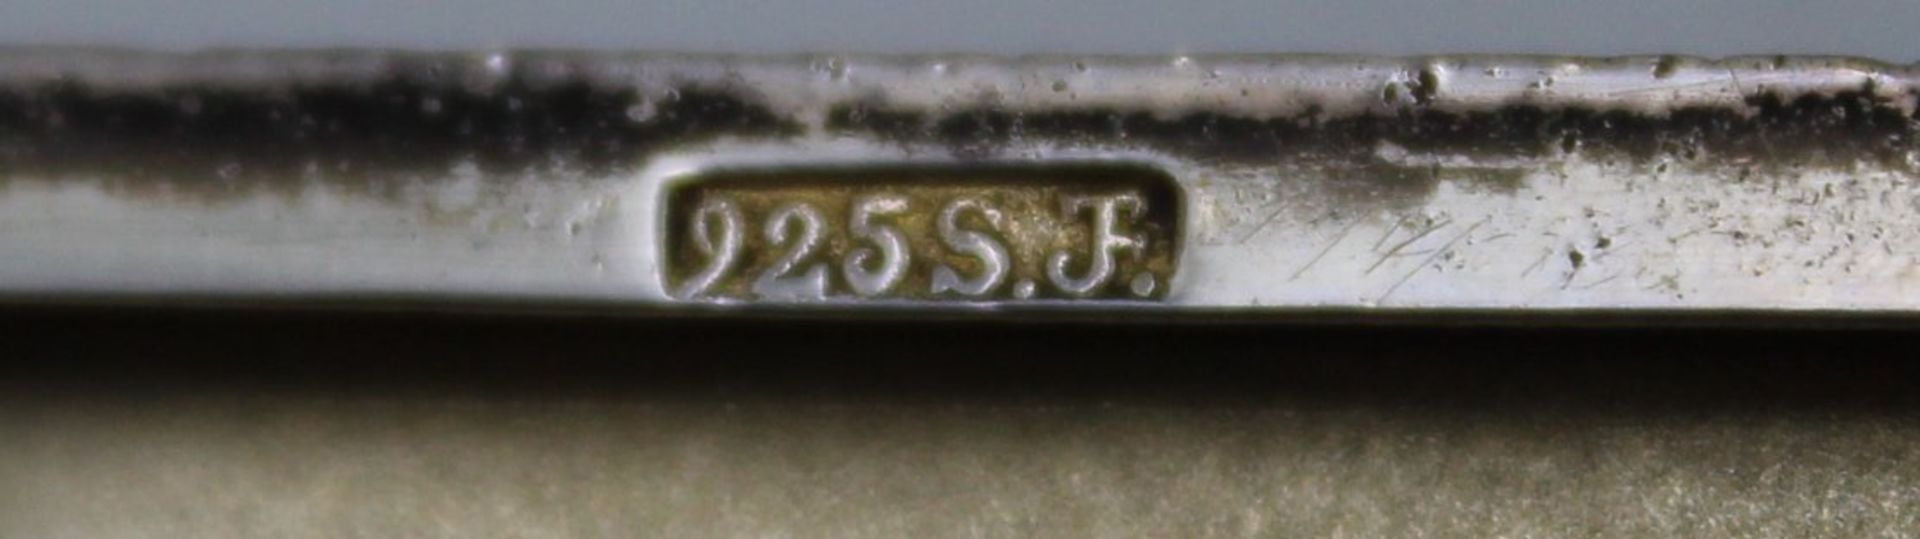 Zigaretten-Etui, 925er Silber, innen Gravur "AEG-SIA" und undeutl. Ritzgravuren, 123gr., ungeputzte - Bild 5 aus 6